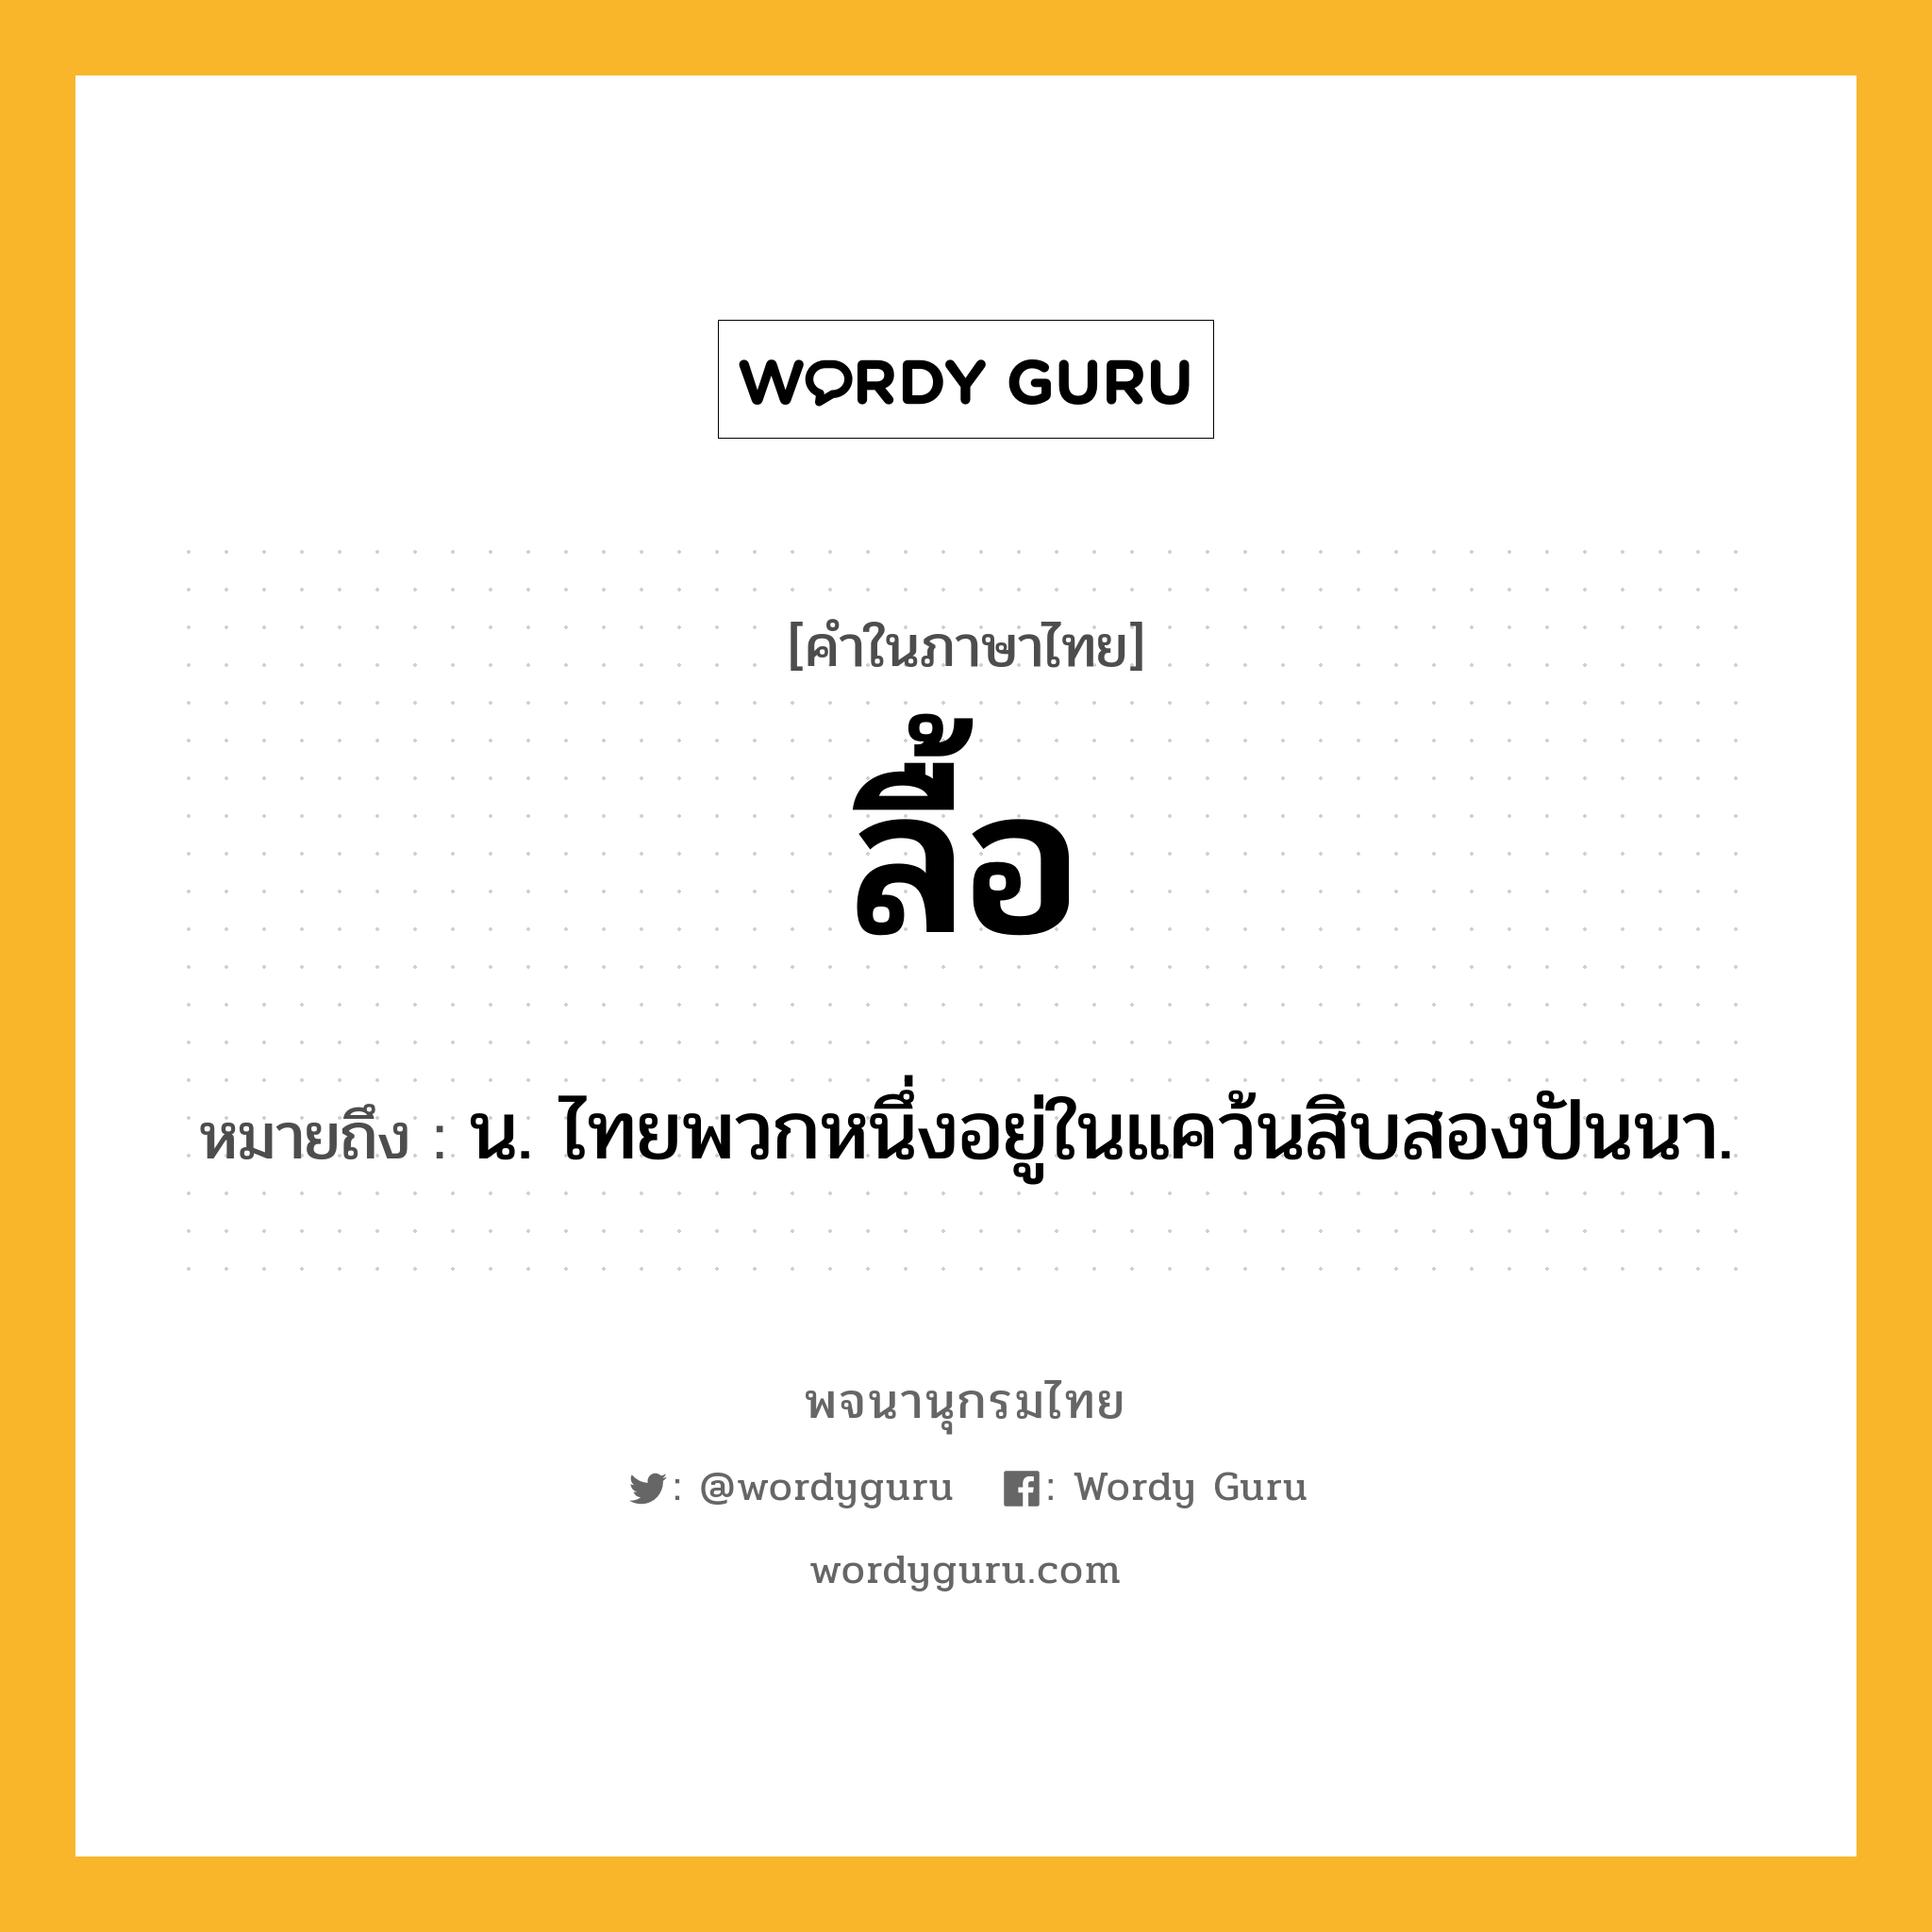 ลื้อ ความหมาย หมายถึงอะไร?, คำในภาษาไทย ลื้อ หมายถึง น. ไทยพวกหนึ่งอยู่ในแคว้นสิบสองปันนา.